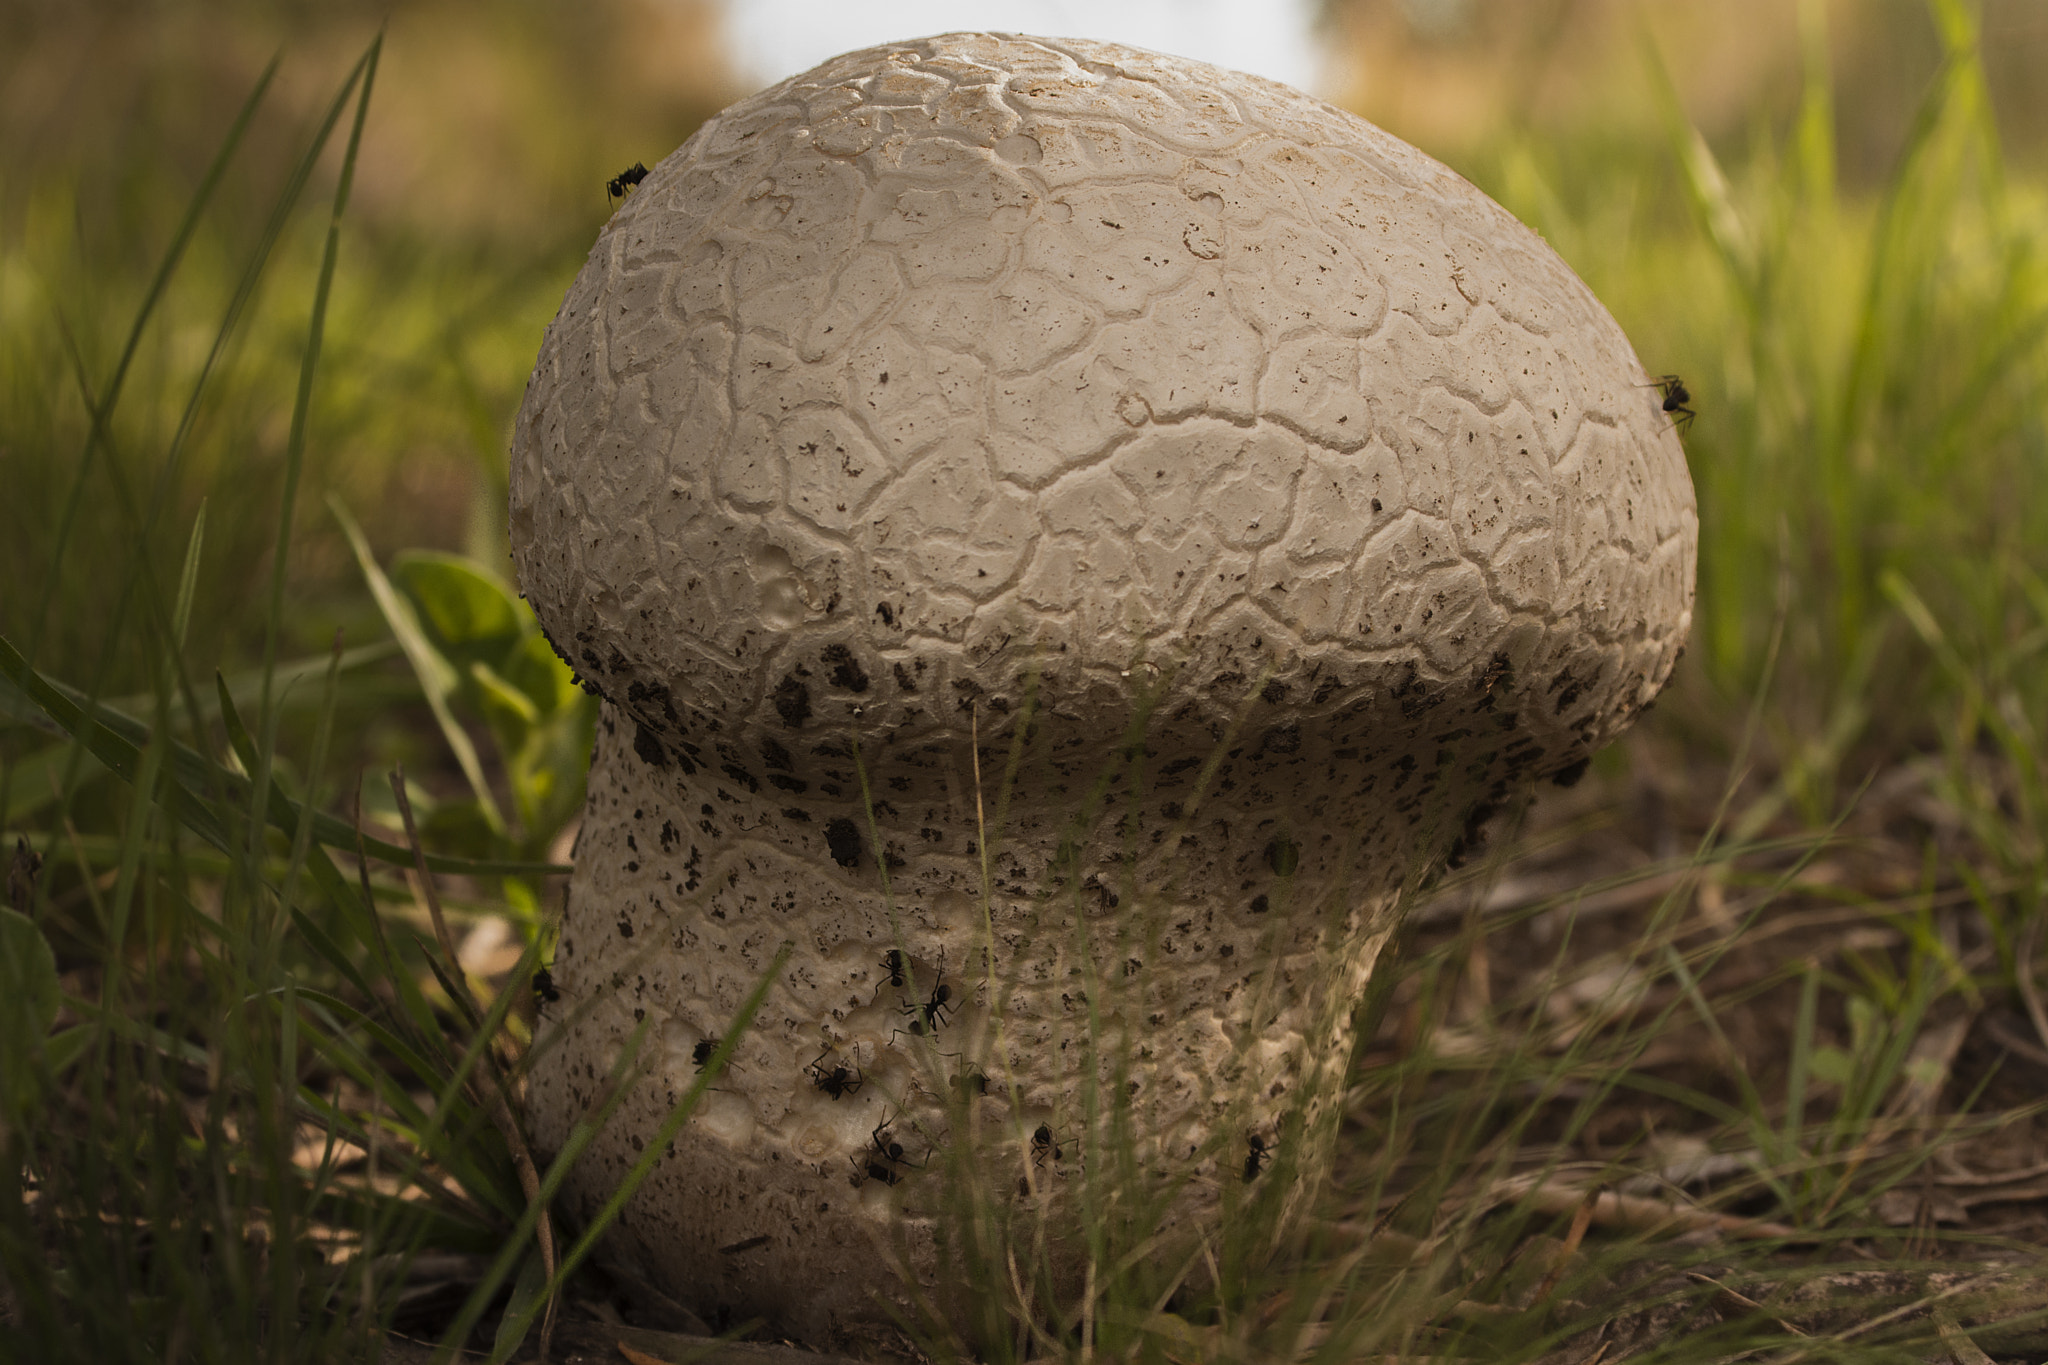 AF Zoom-Nikkor 35-80mm f/4-5.6D N sample photo. Mega mushroom photography